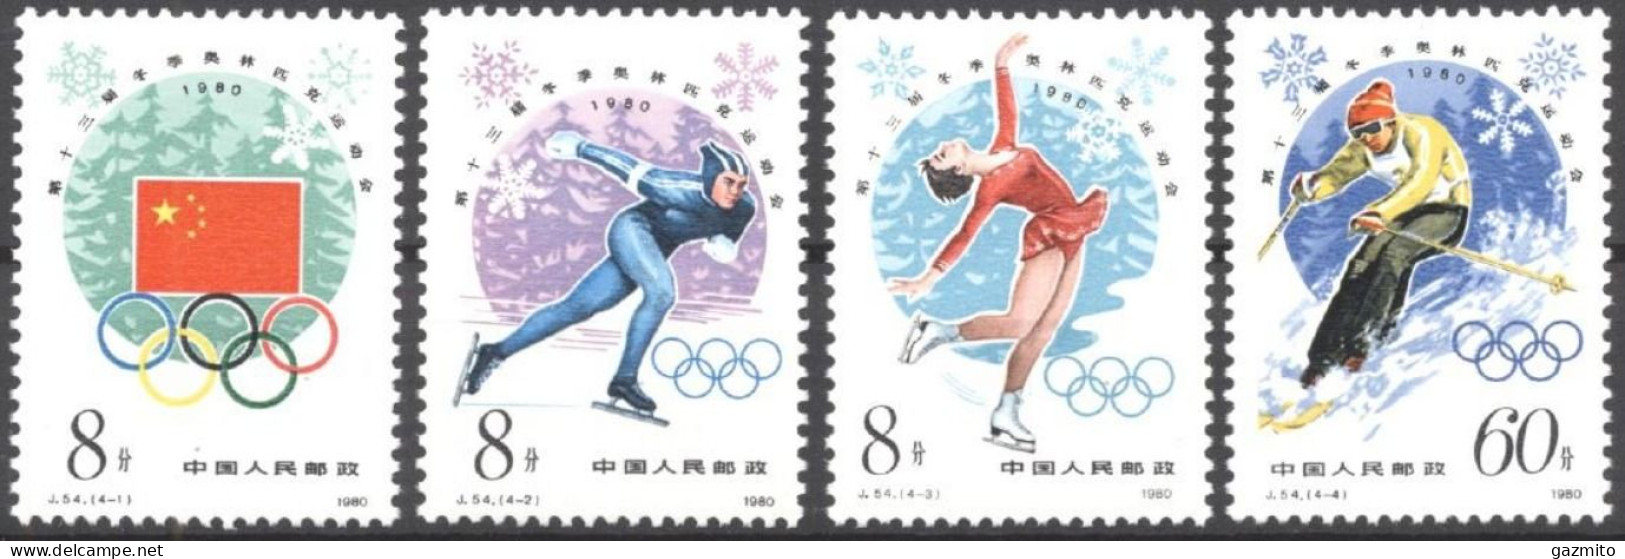 China 1980, Winter Olympic Games, Lake Placid, Skating, Skiing, 4val - Nuevos